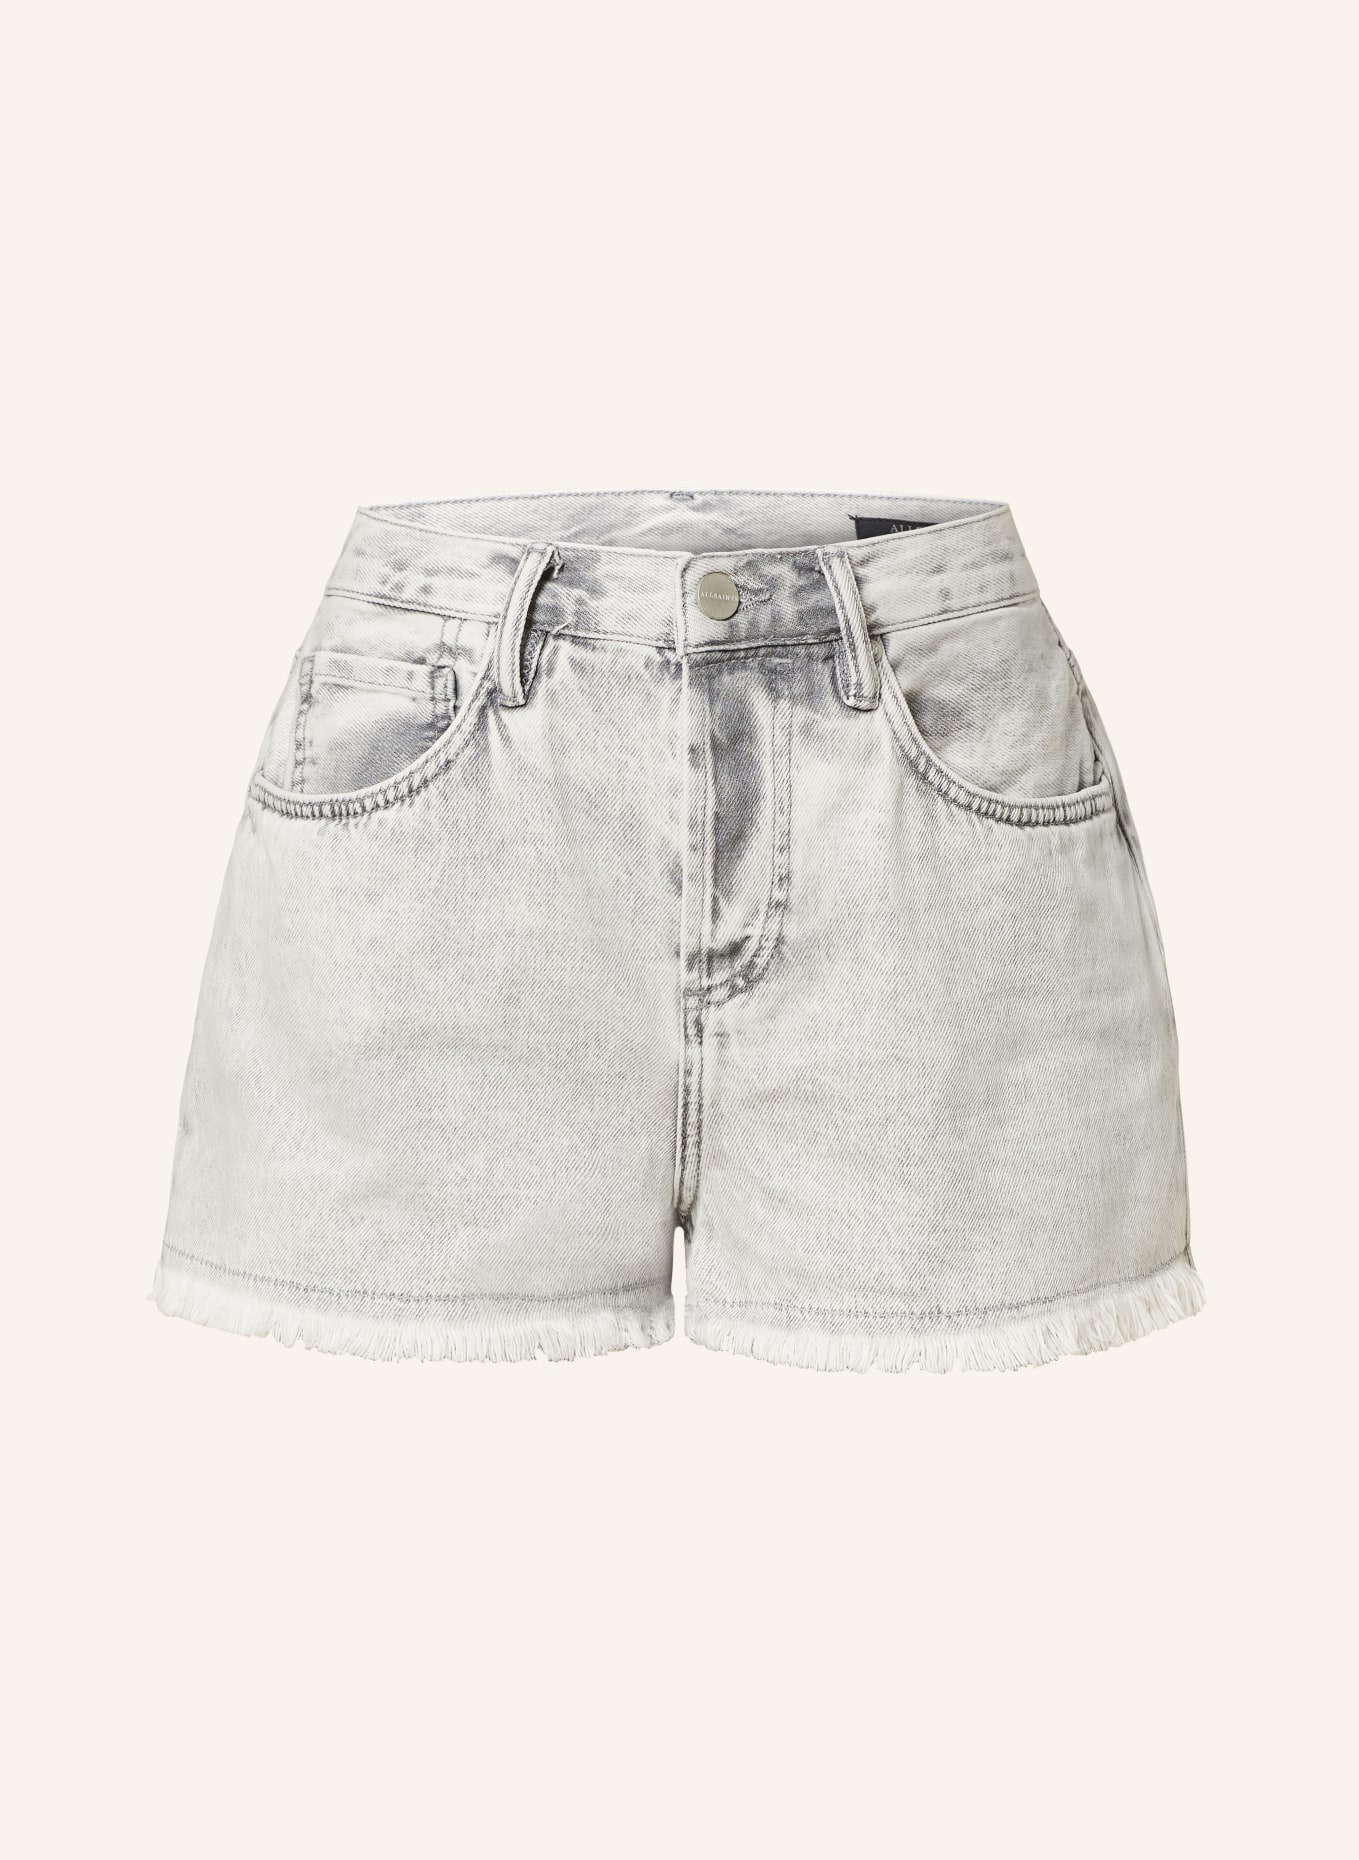 ALLSAINTS Jeans shorts HEIDI, Color: 7419 SNOW GREY (Image 1)